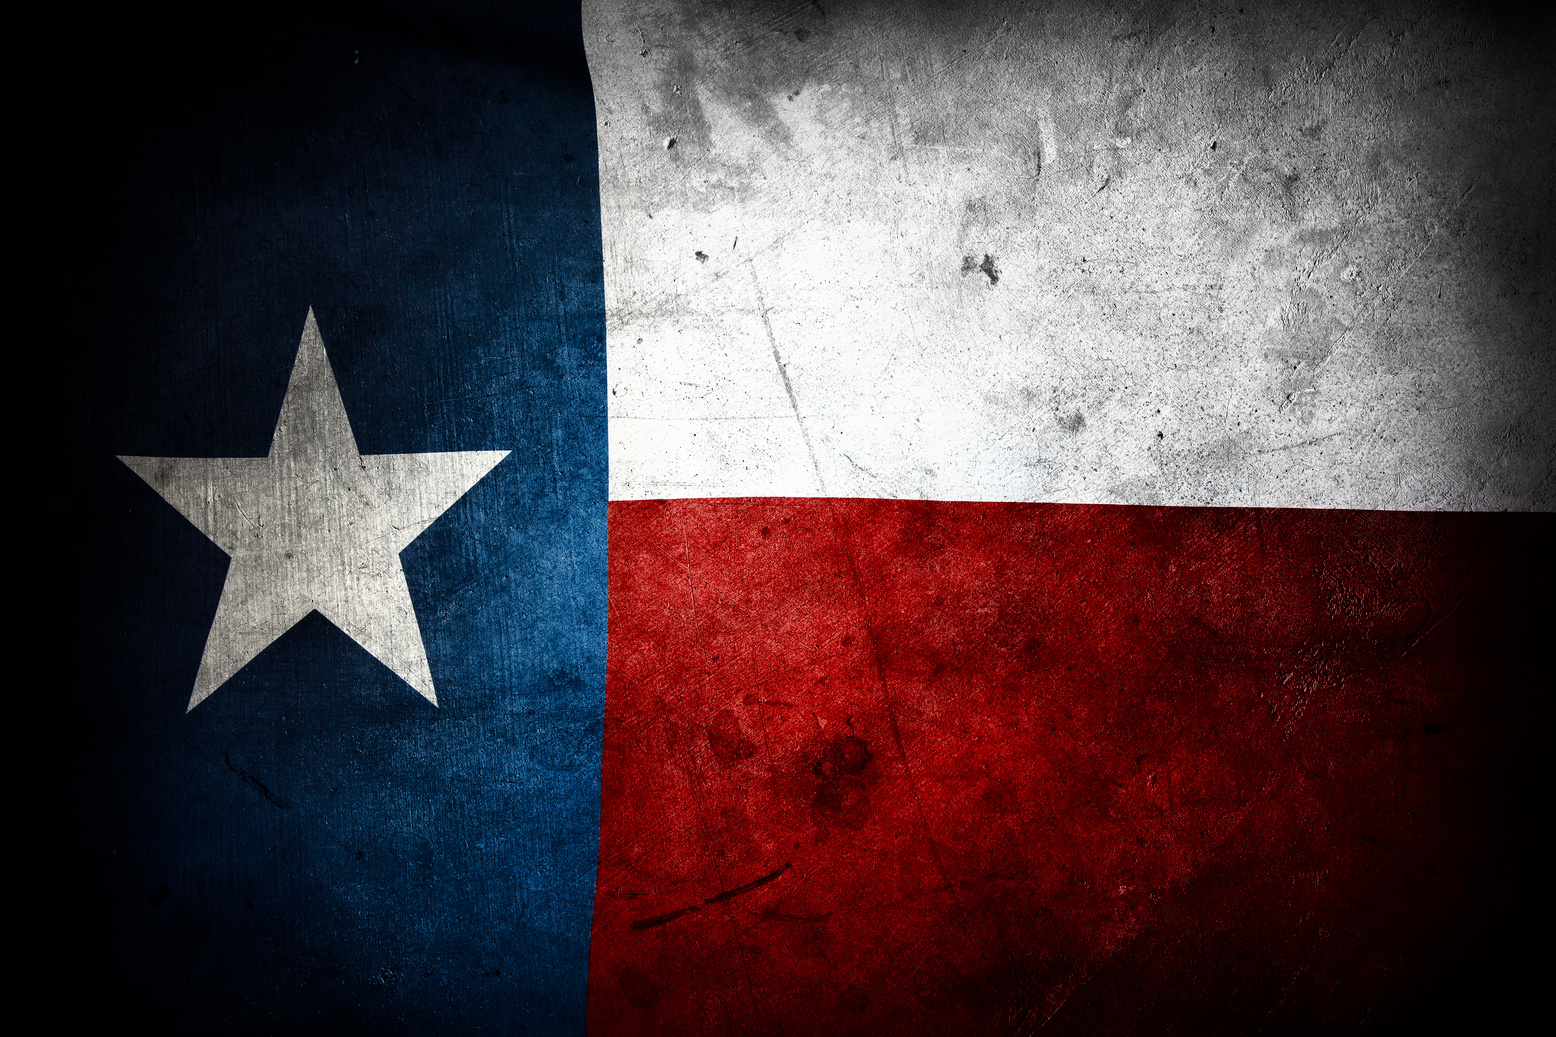 Grungy Texas flag